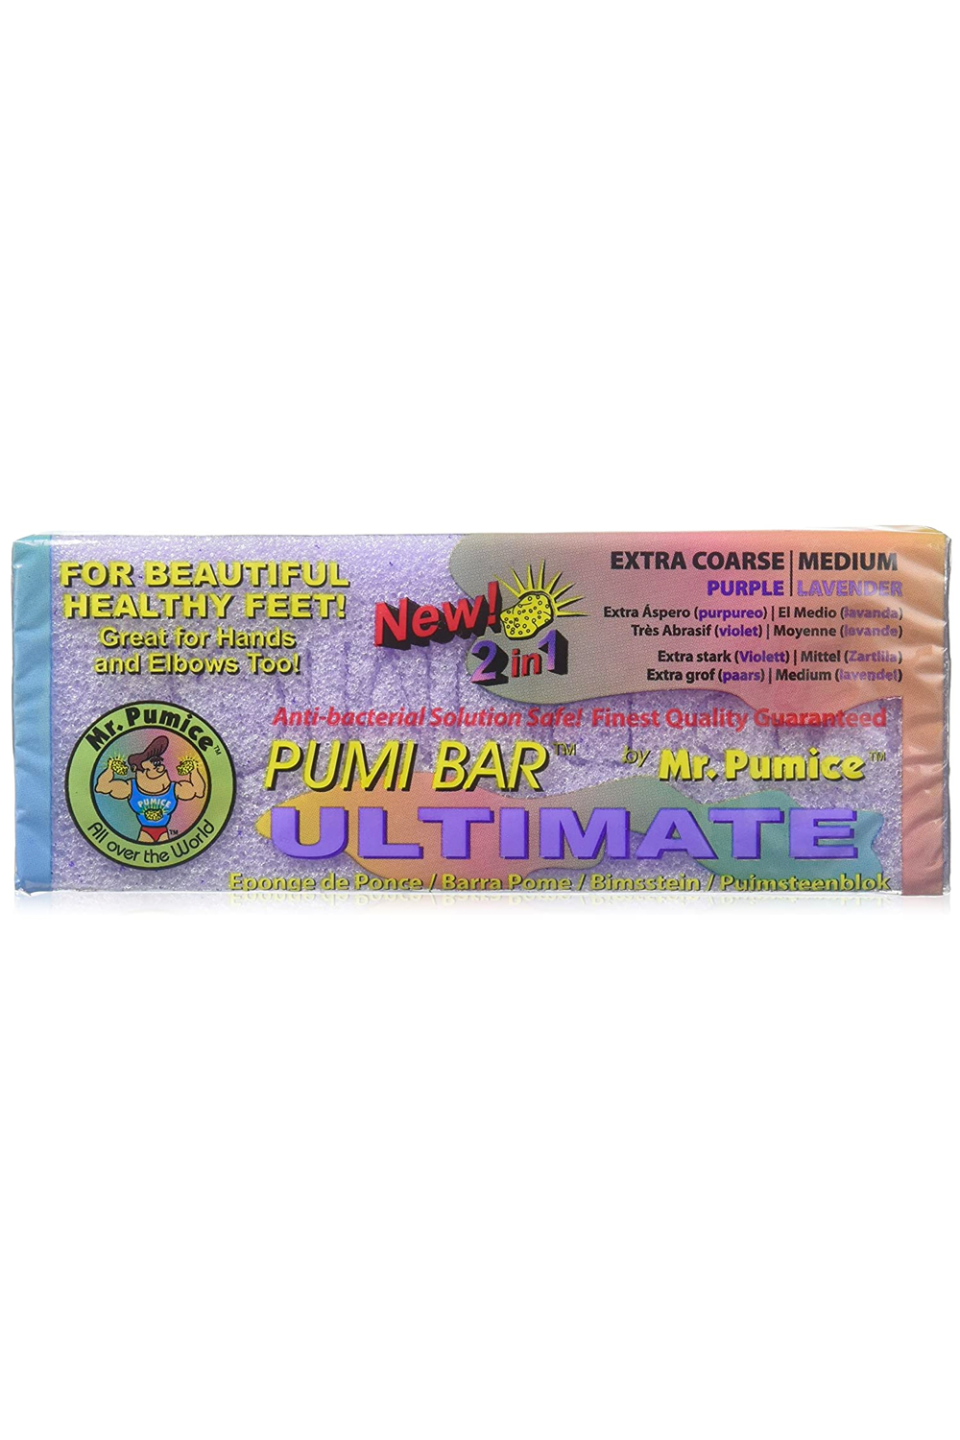 8) Mr. Pumice Ultimate Pumi Bar 2 in 1